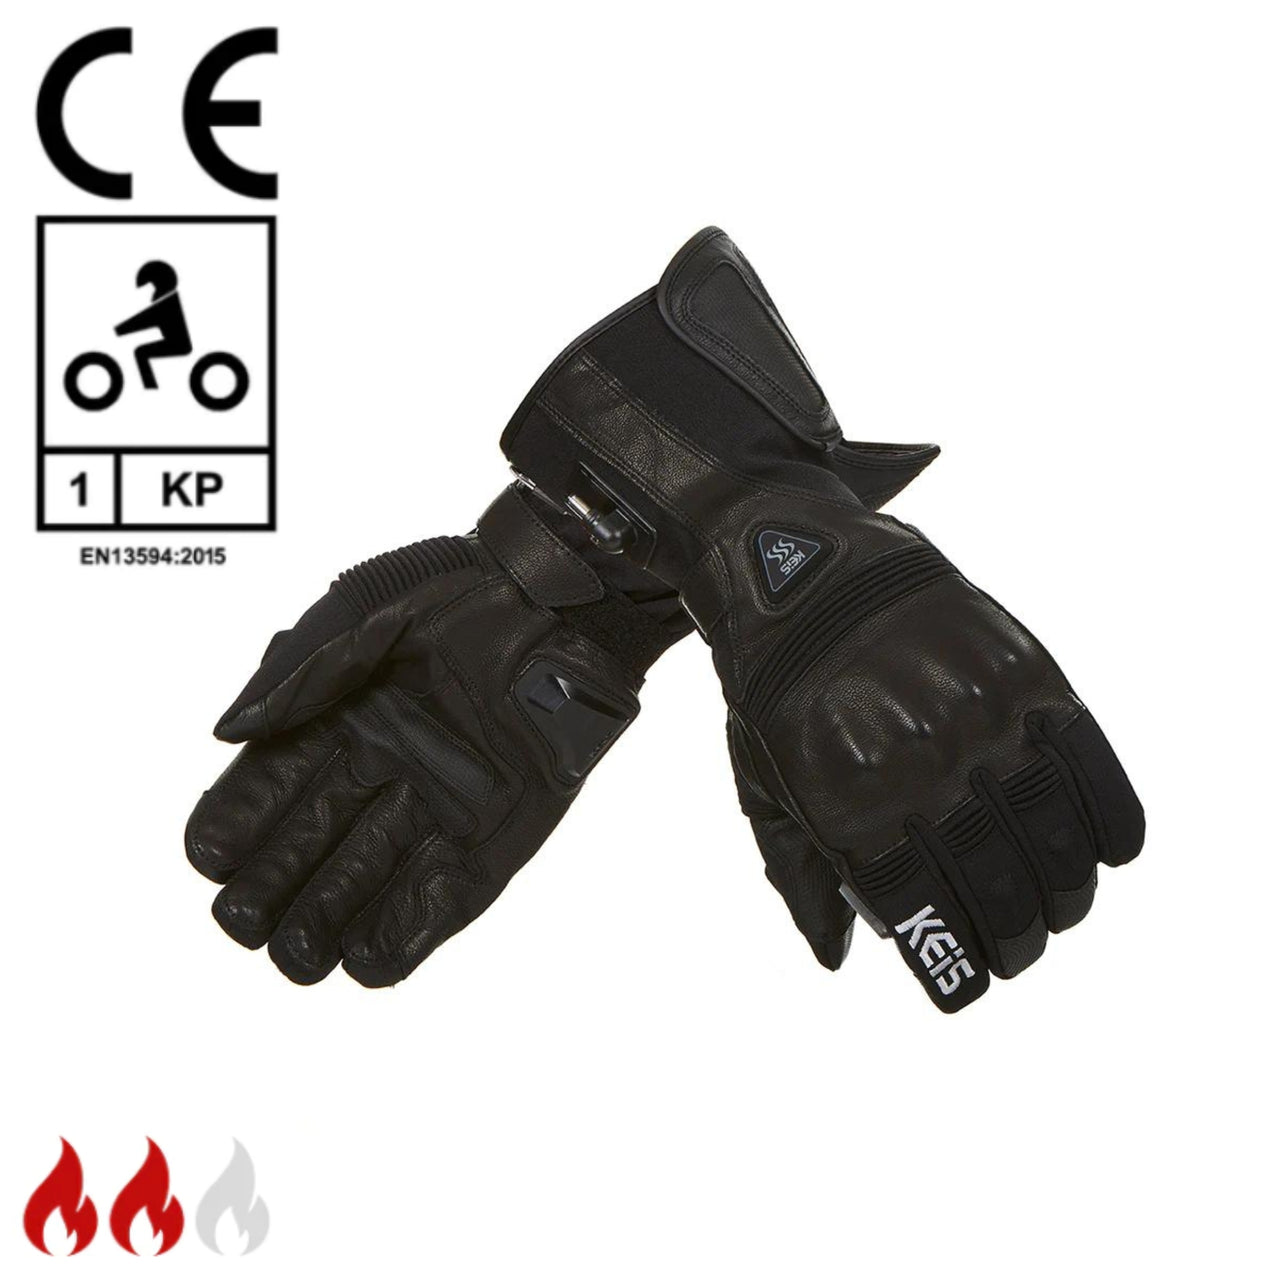 Keis G601 Gloves